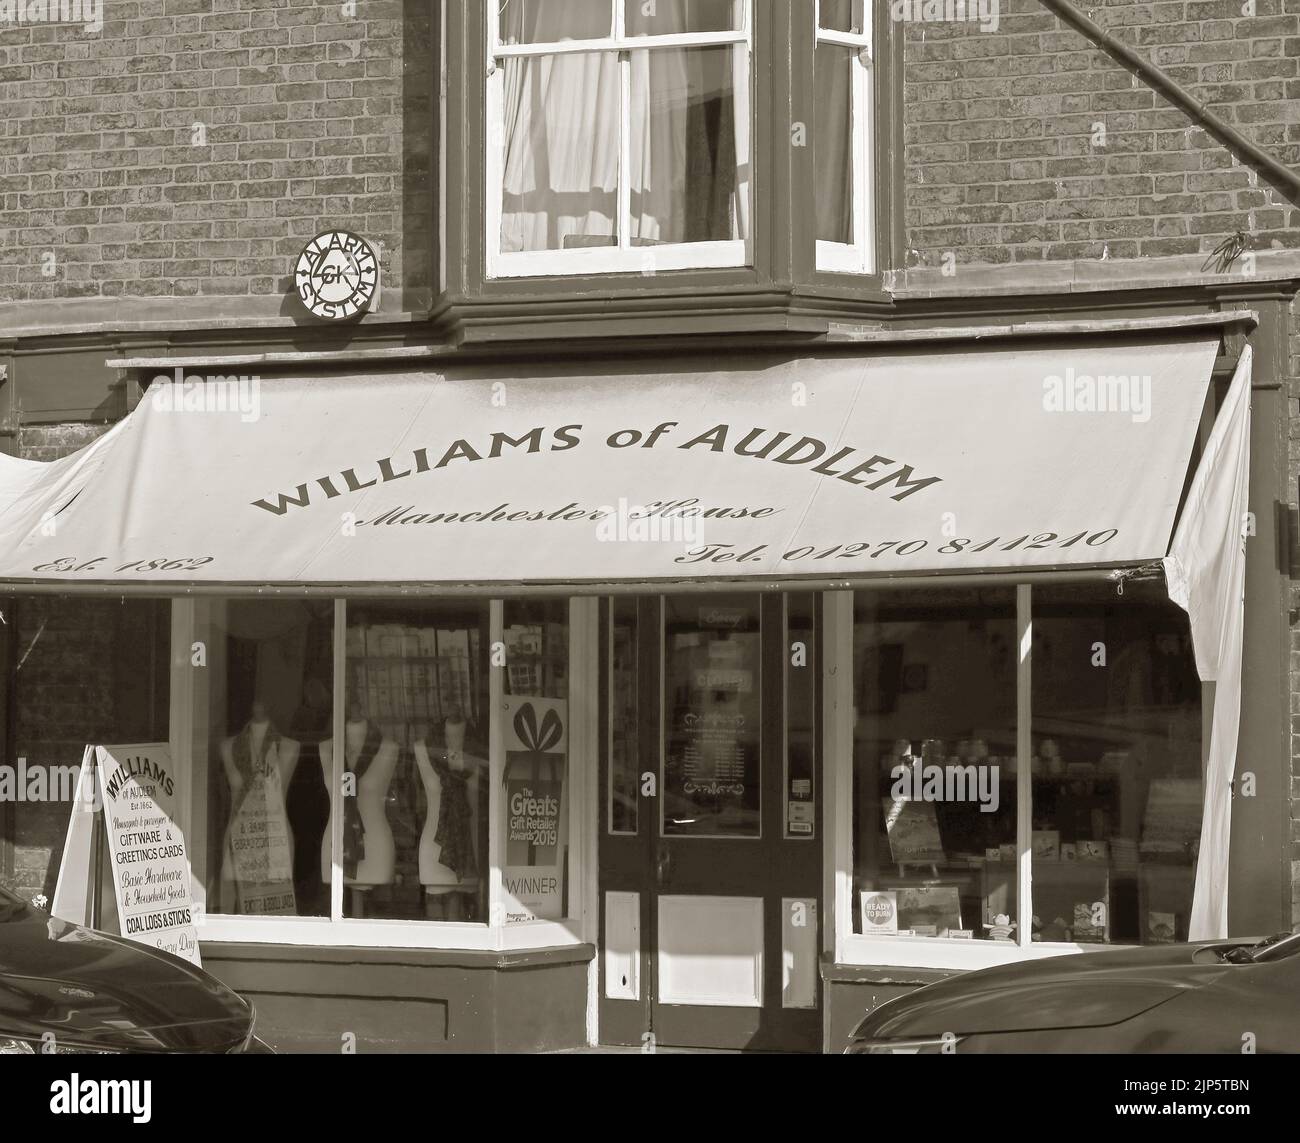 Williams of Audlem, Manchester House, 1 Shropshire Street, Audlem, Cheshire, England, UK, CW3 0AB - monochrome Stock Photo